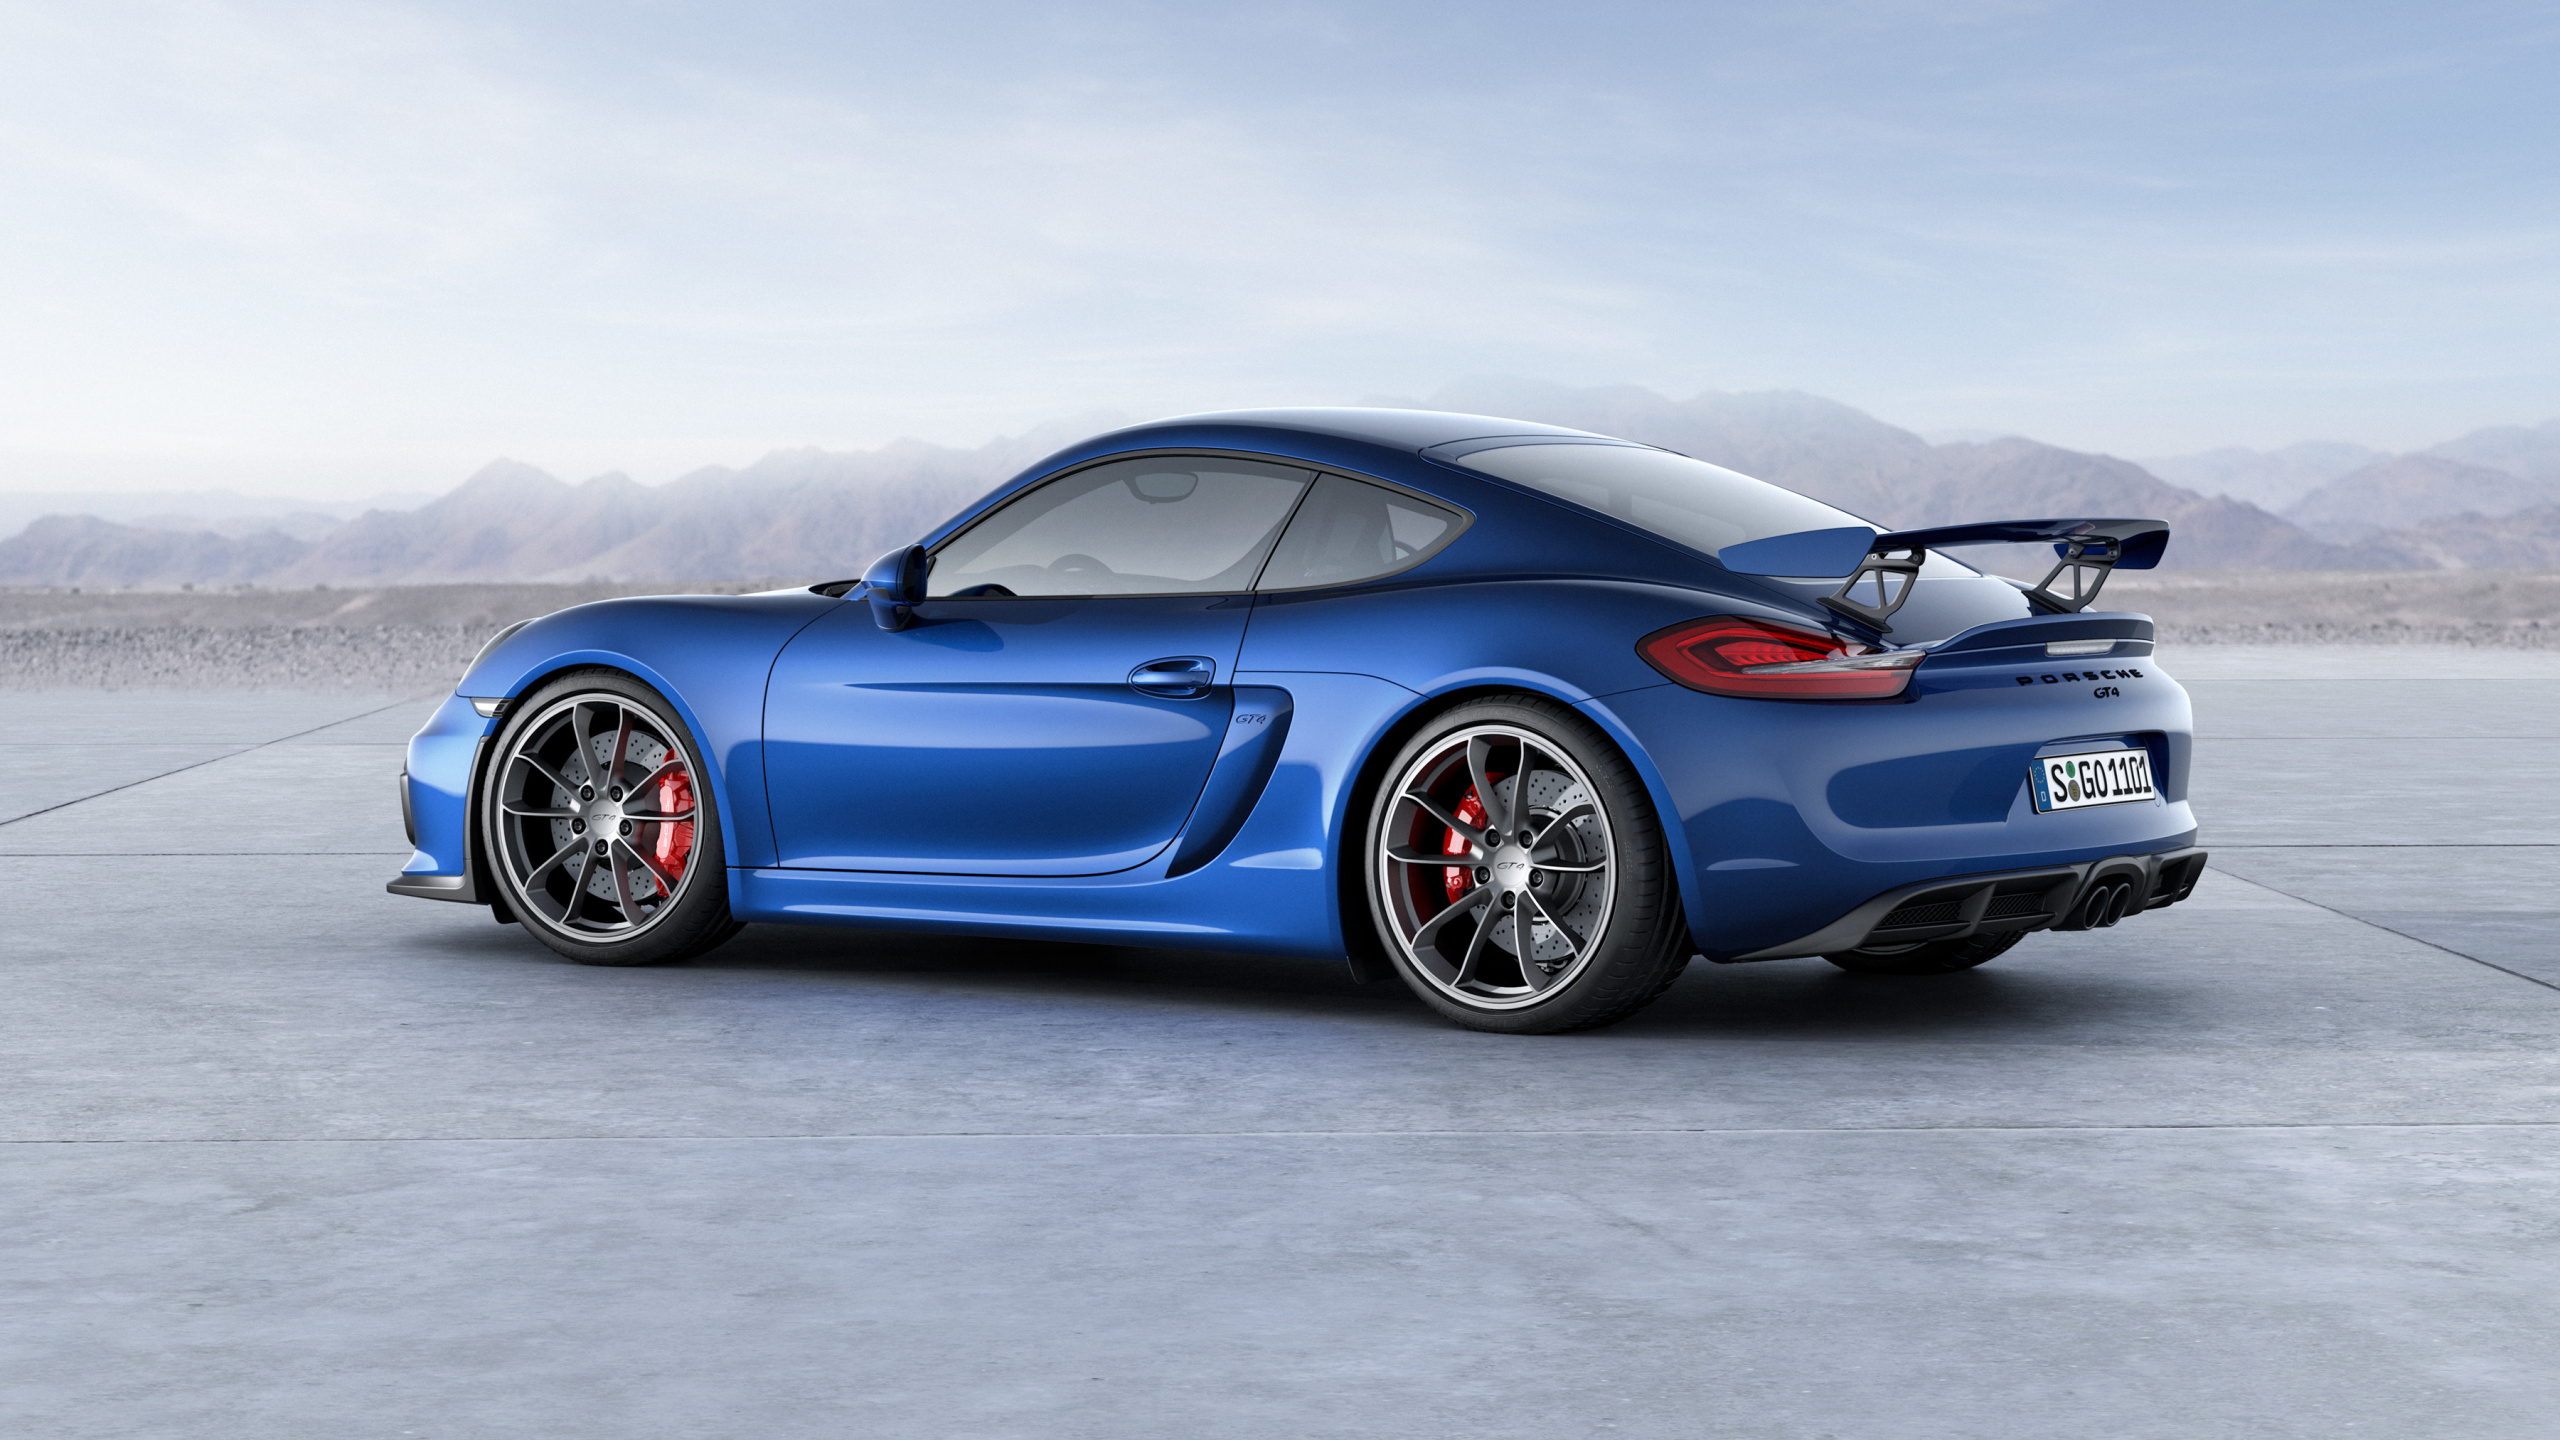 Blauer Porsche 911 Auf Grauem Betonpflaster. Wallpaper in 2560x1440 Resolution